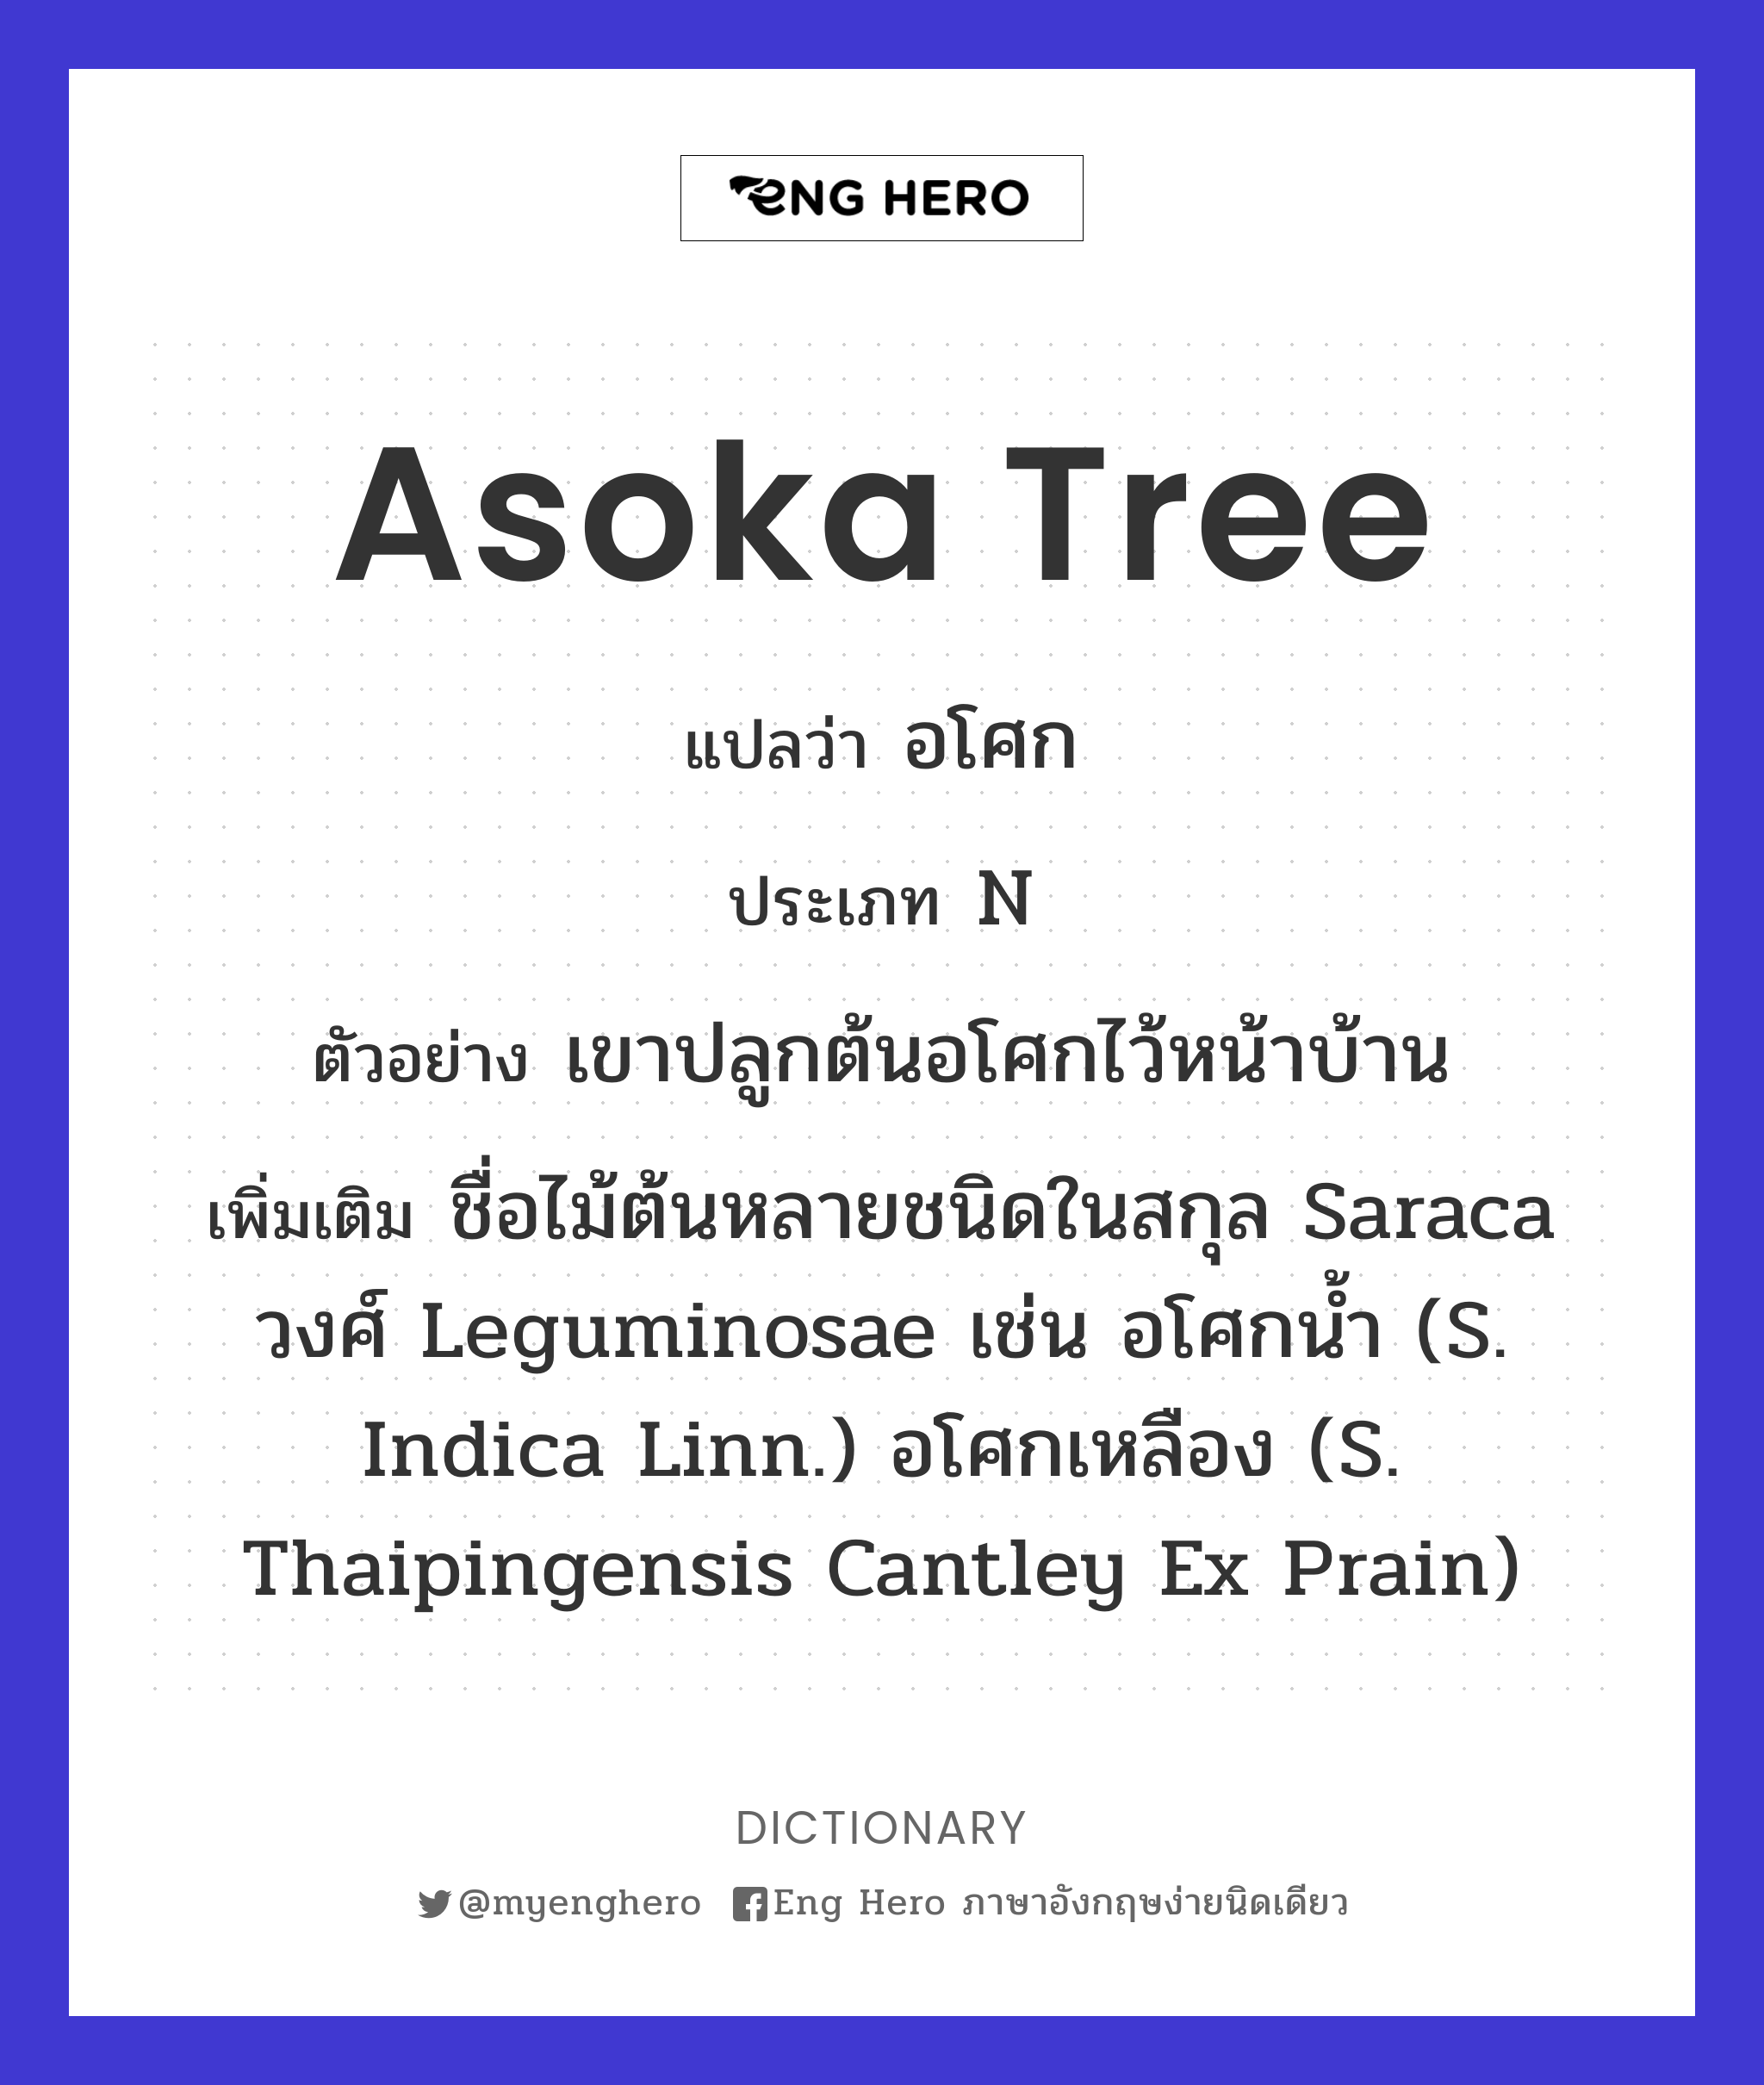 Asoka tree